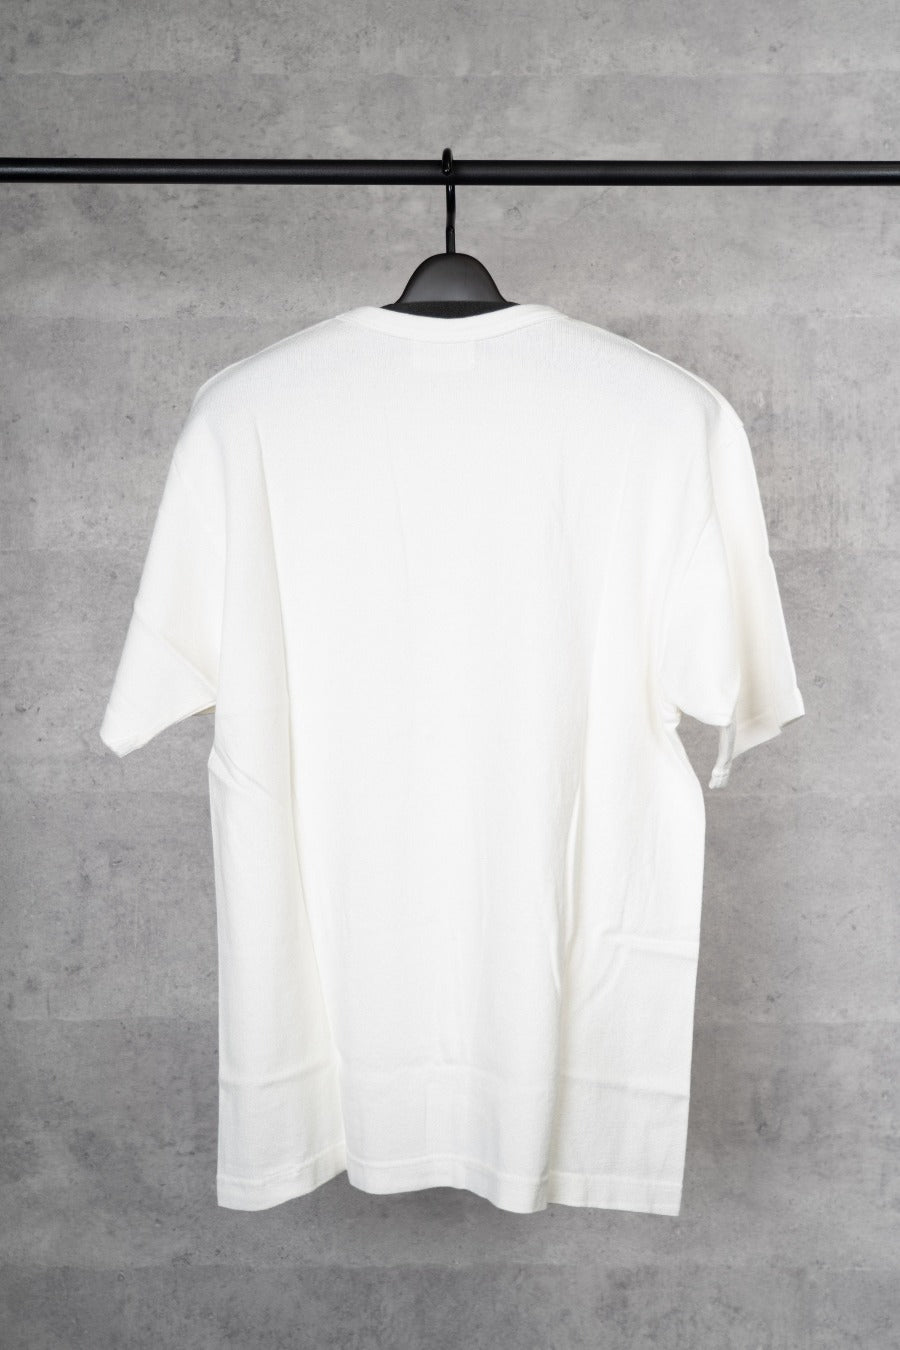 【浅野撚糸】和紙有機Tee / T-Shirt